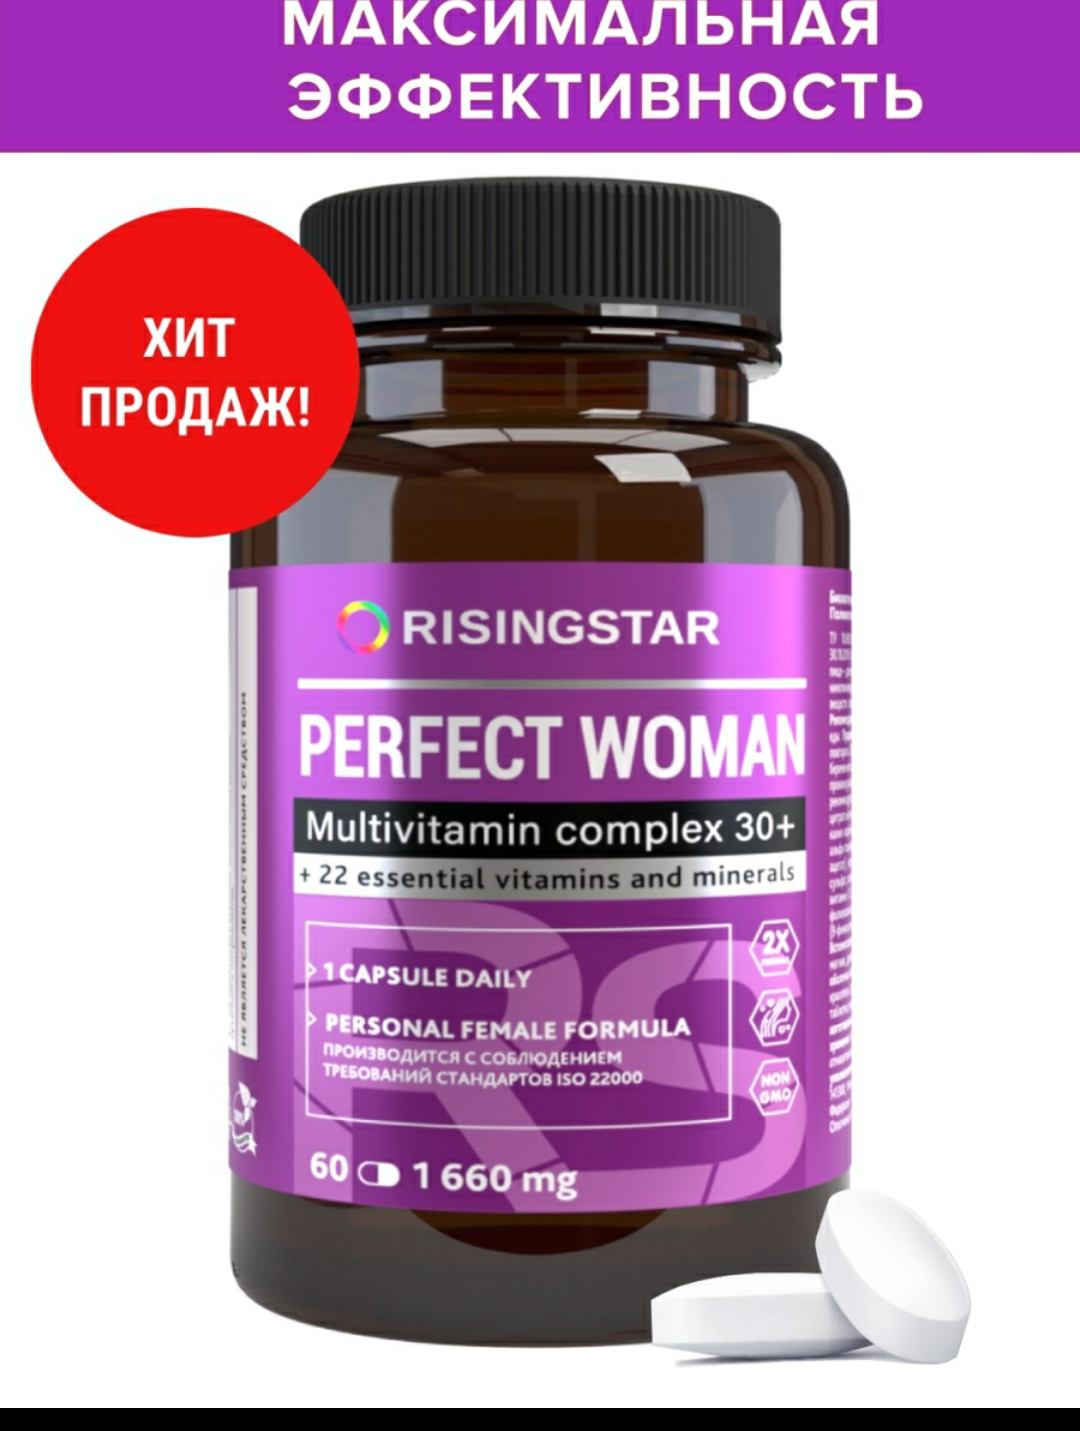 Витамины для женщин для восстановления гормонального фона